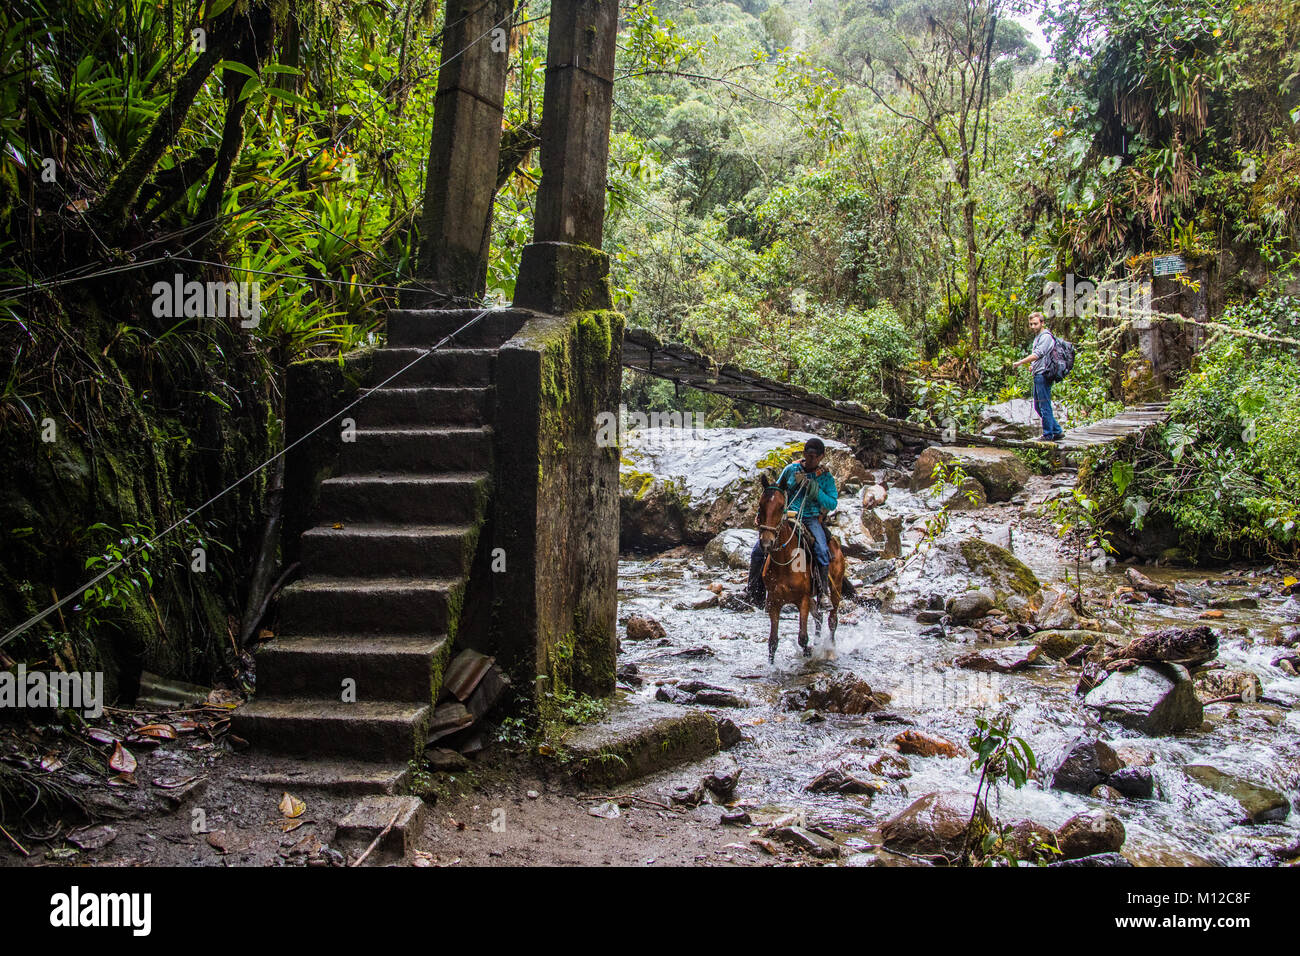 Valle de Cocora hiking trail, near Salento, Colombia, South America Stock Photo